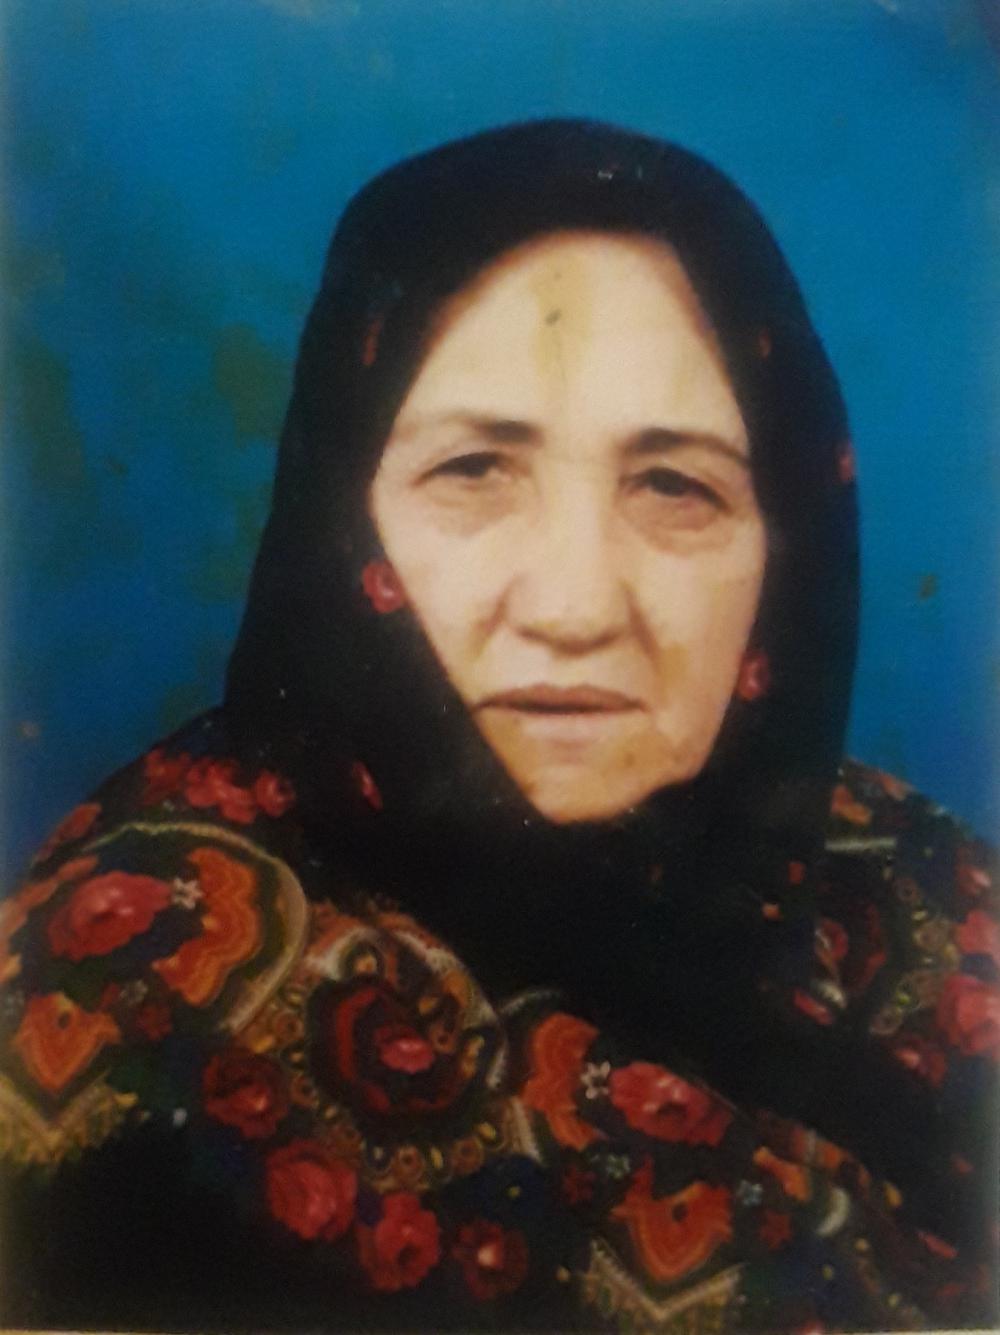 یادبود شادروان مادری مهربان وفداکار اکرم عاشق ایرانپور